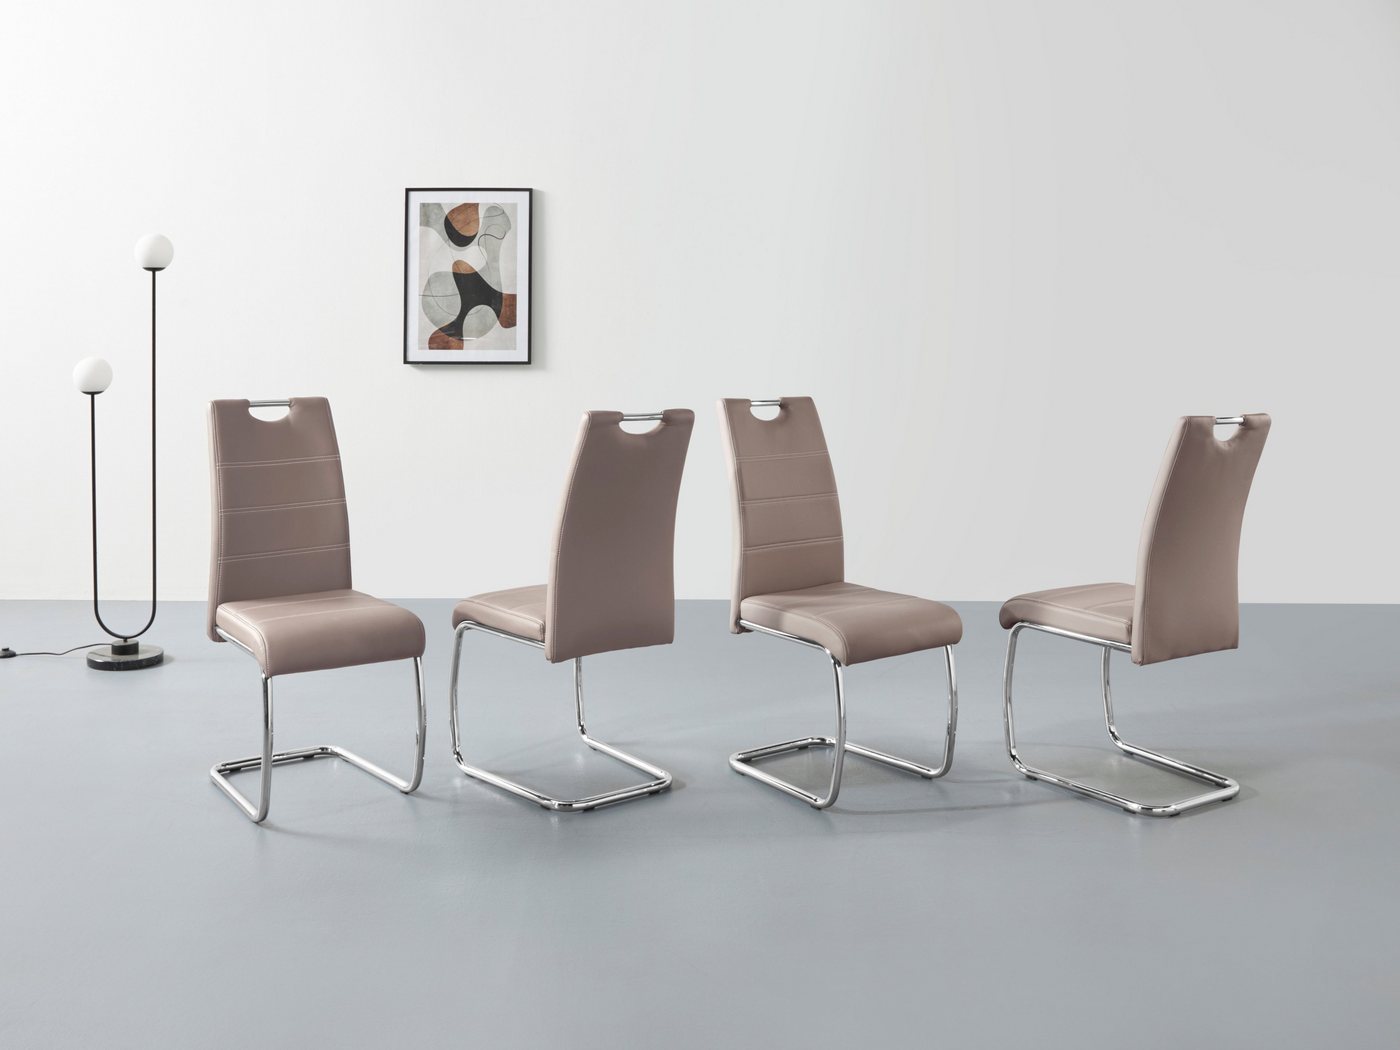 Esszimmerstühle und andere Stühle von HELA. Online kaufen bei Möbel &